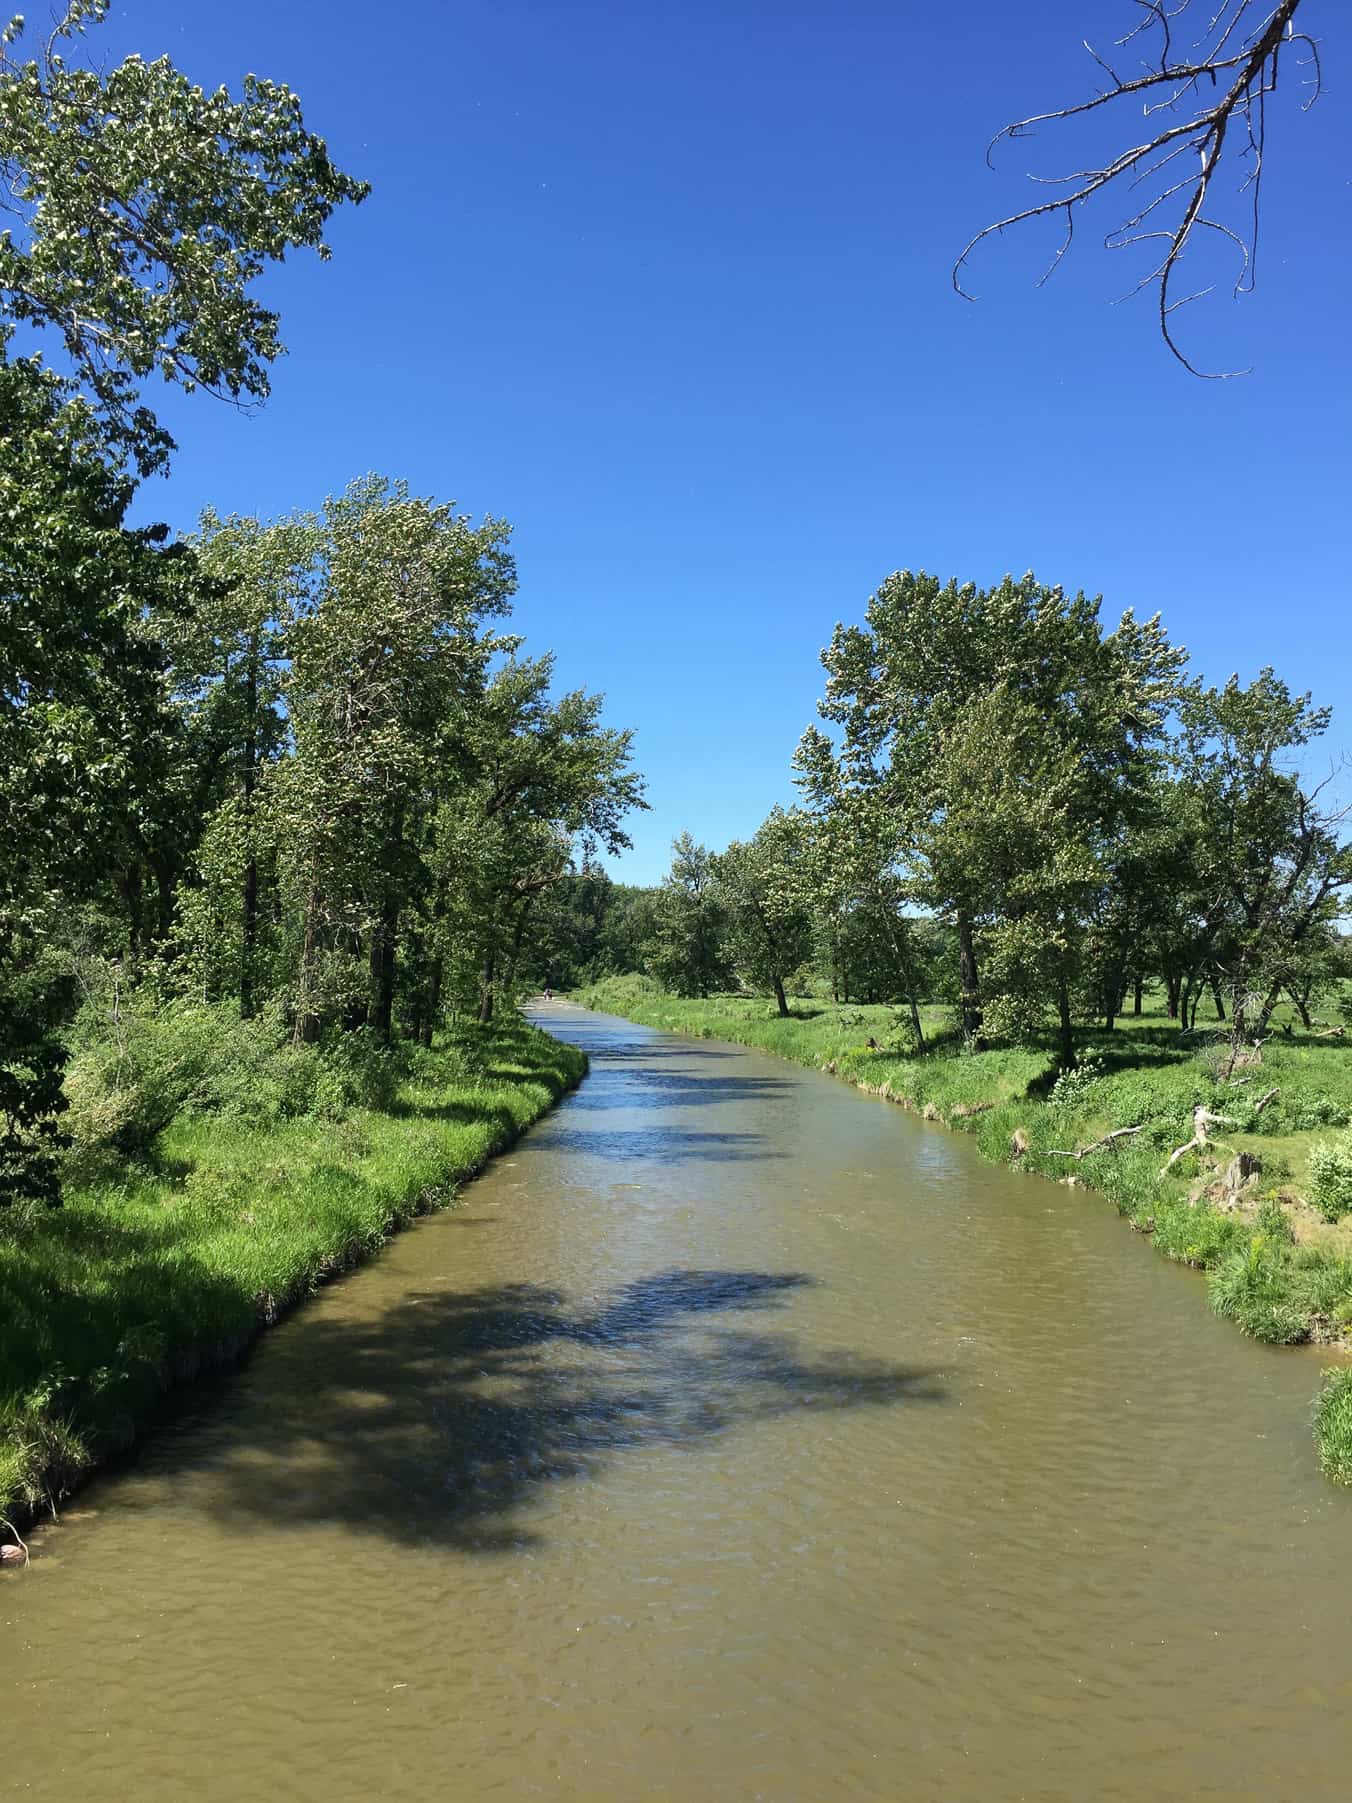 7 Reasons to Visit Fish Creek This Summer!